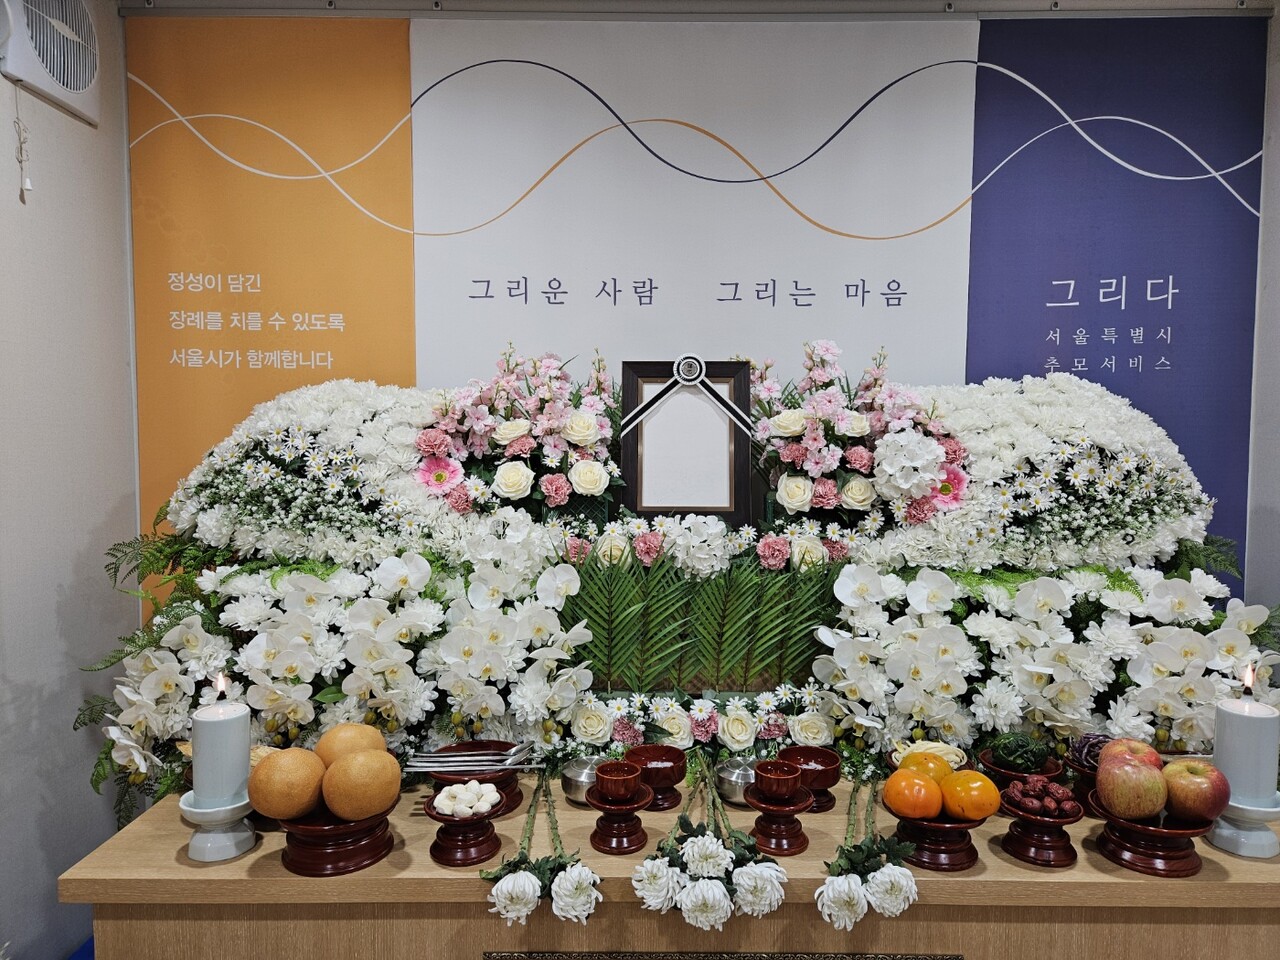 지난 17일 서울시립승화원에서는 무연고 사망자를 위한 공영 장례가 치러졌다.